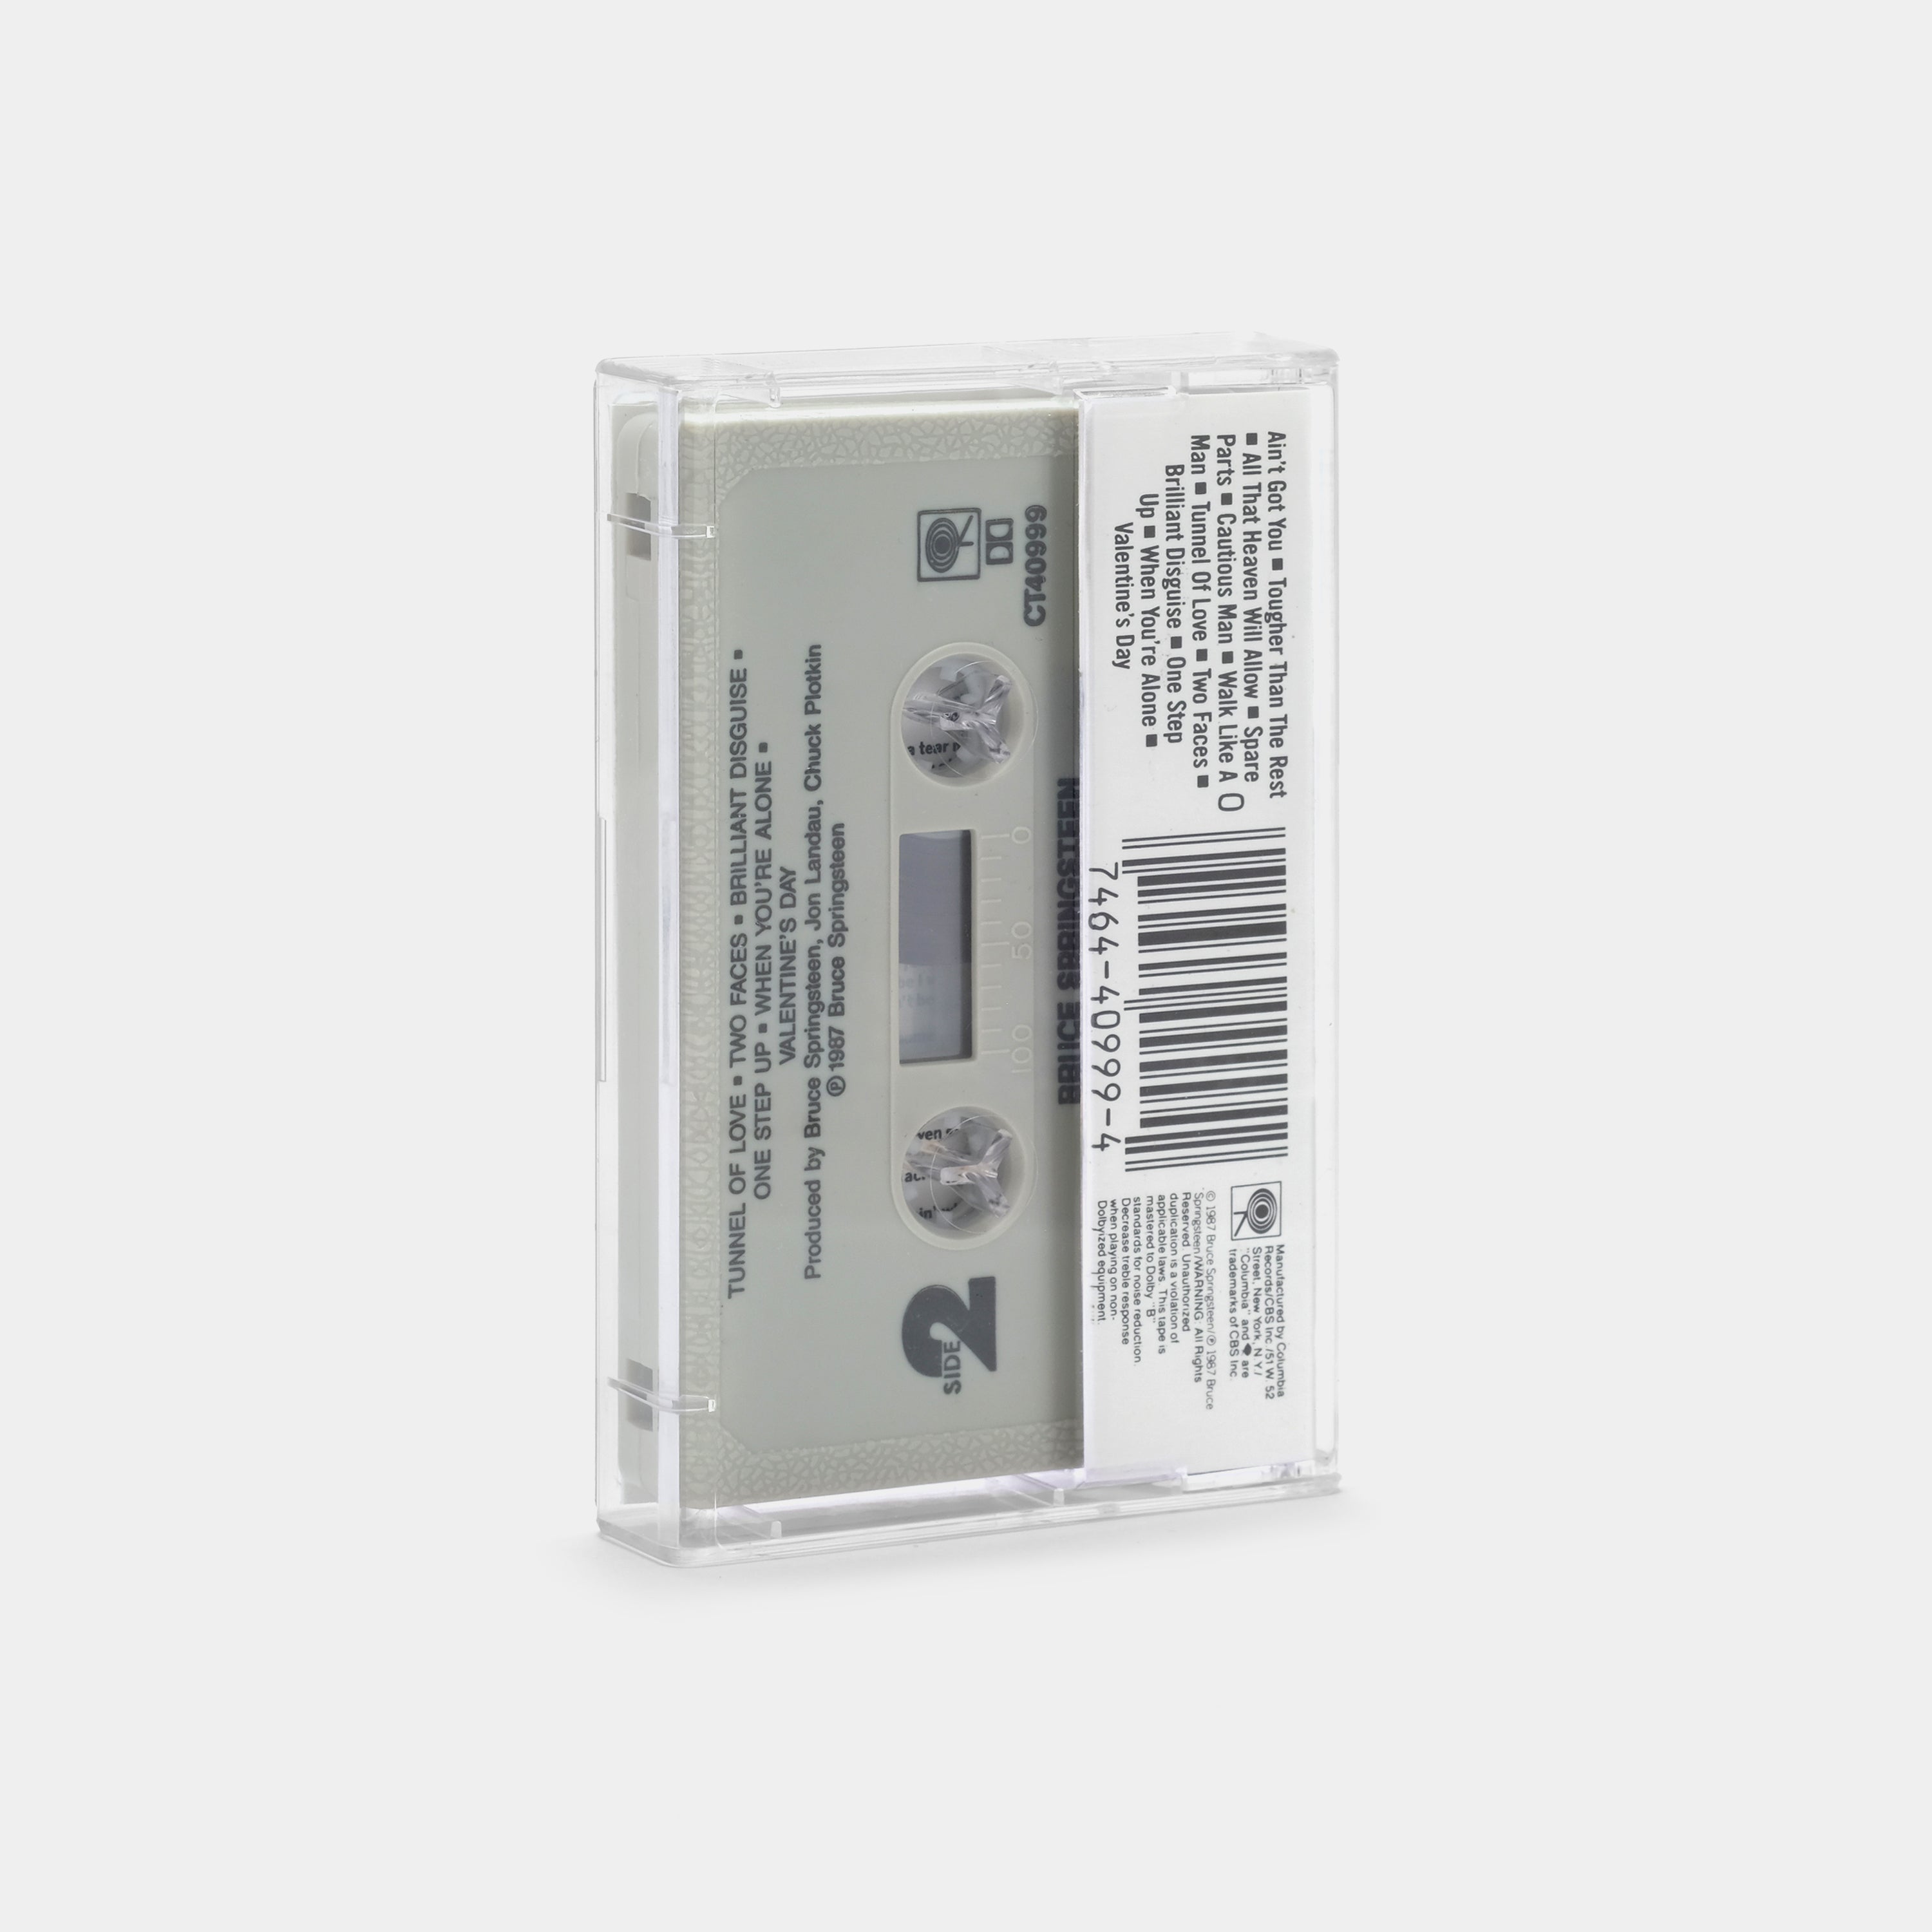 Bruce Springsteen - Tunnel Of Love Cassette Tape